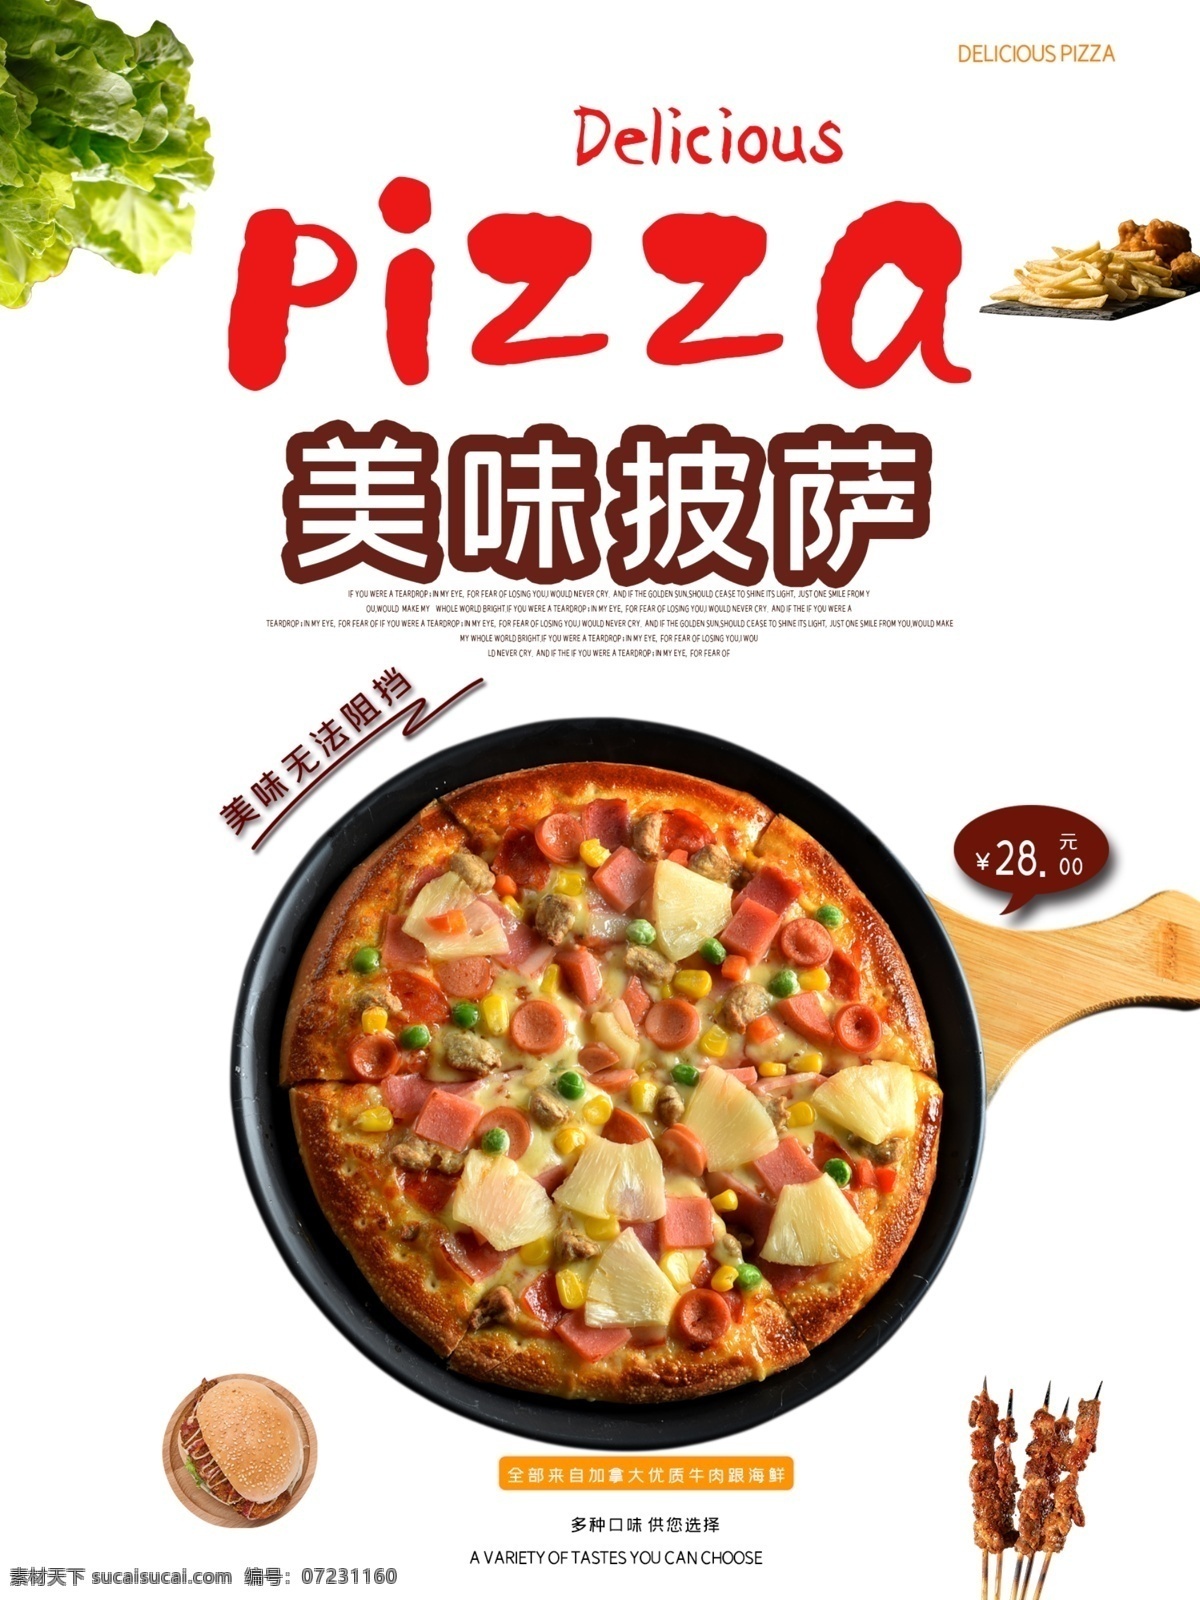 比萨 披萨平铺 披萨摆设 披萨制作 披萨海报 披萨展板 比萨灯箱 披萨文化 披萨促销 披萨西餐 披萨快餐 披萨加盟 披萨店 披萨包装 披萨美食 西式披萨 披萨价格表 披萨外卖 披萨画 披萨菜单 正宗披萨 披萨饼 披萨传单 意大利披萨 pizza 披萨 美味披萨 披萨做法 披萨饮食 披萨团购